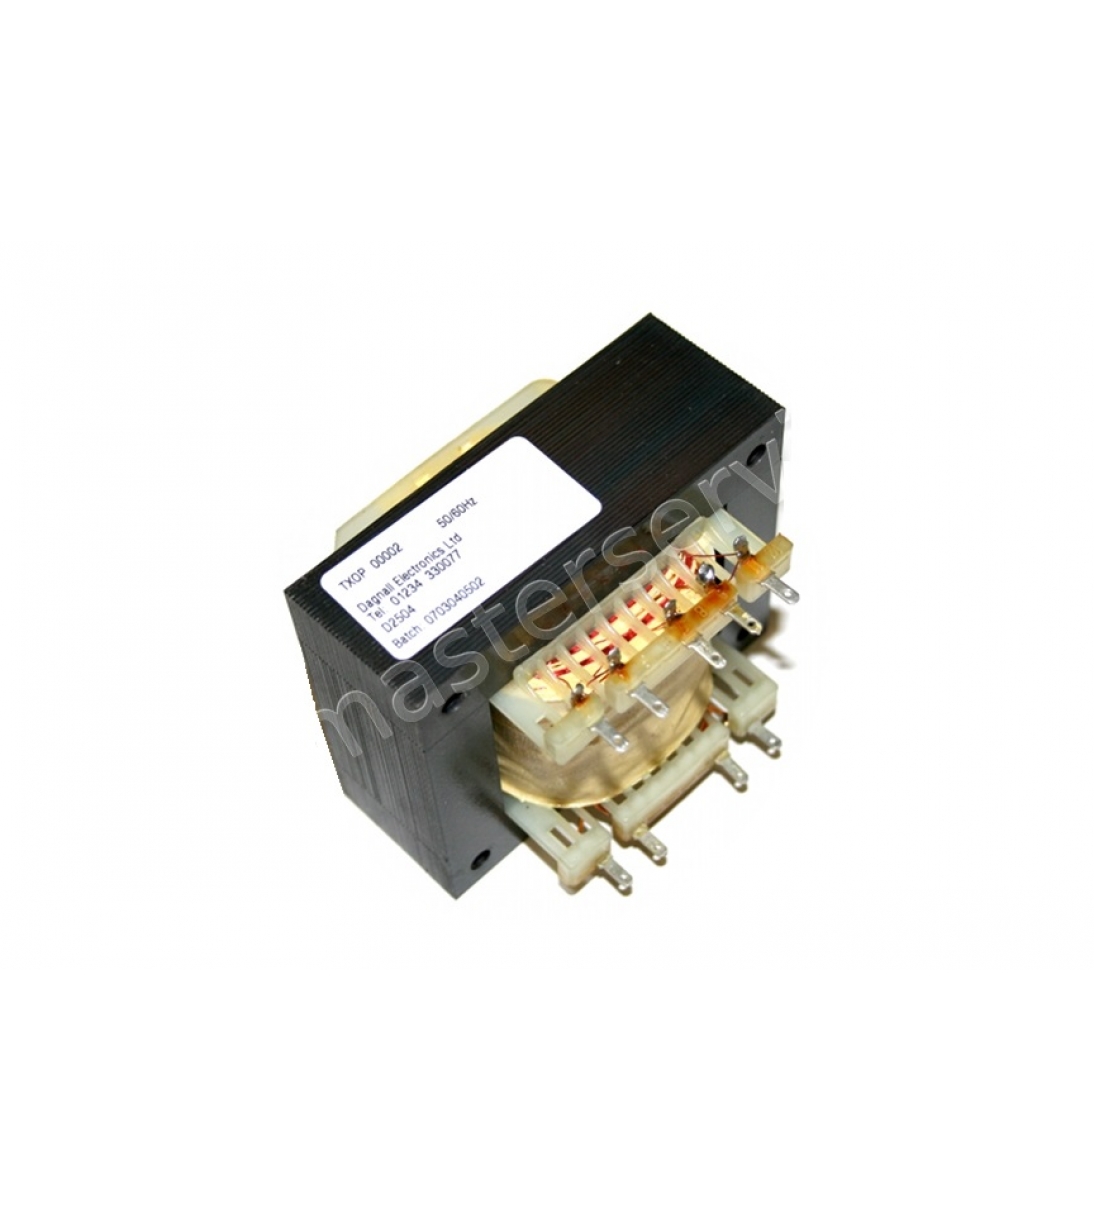 Trasformatore di uscita D2504 DE (784-348) per JCM900, JCM600, TSL60, DSL50, el34 50/50, JTM60 etc.